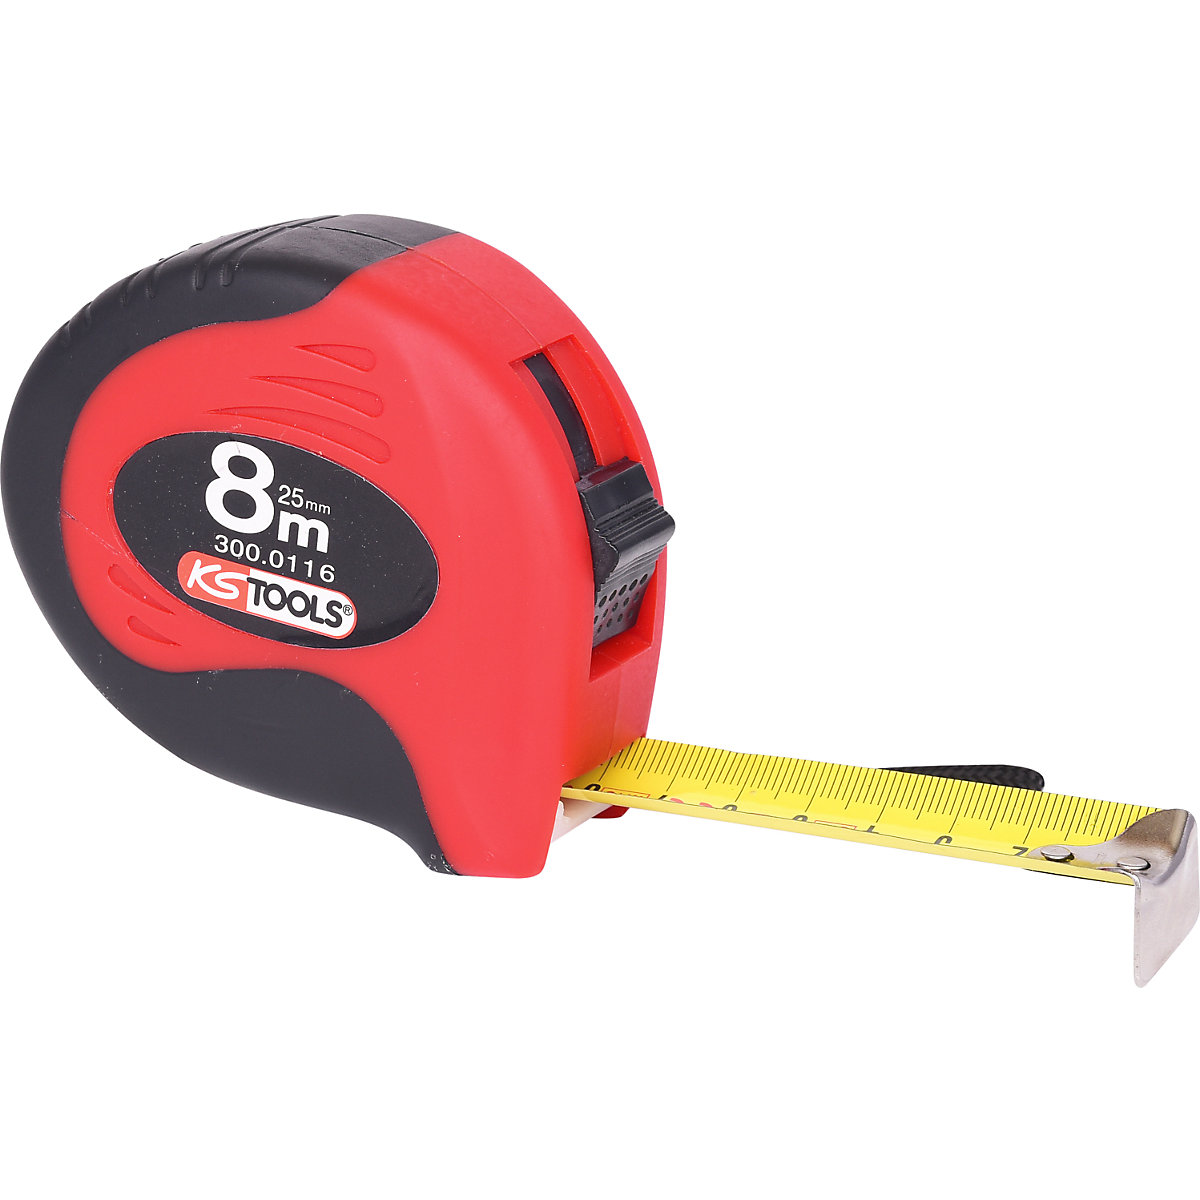 Maßband mit Feststeller KS Tools, schwarz / rot, Länge 8 m, Bandbreite 25 mm-4